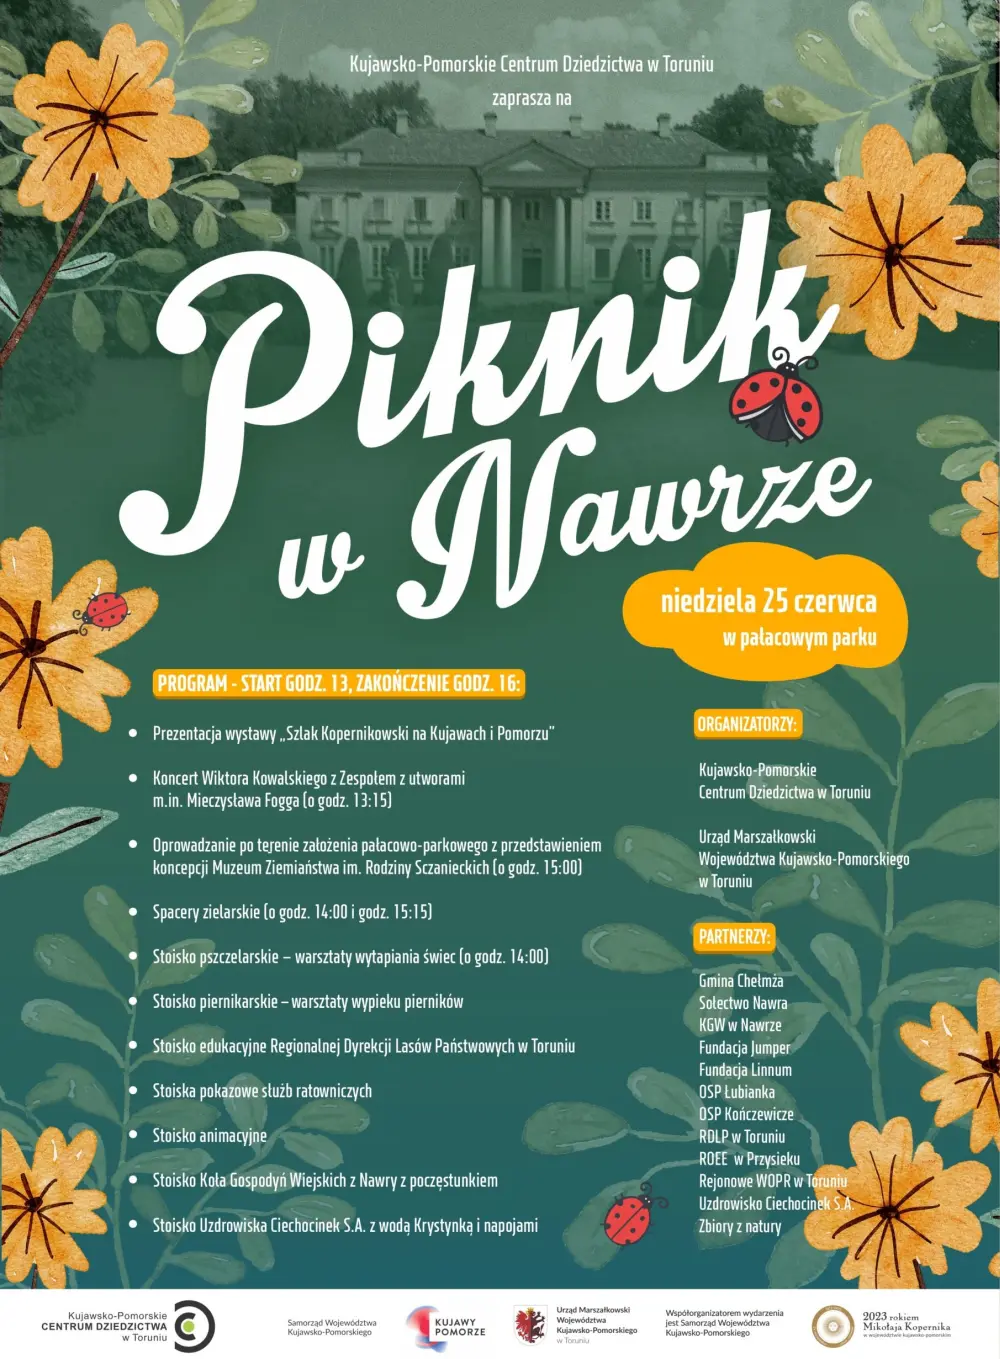 Plakat z programem Pikniku w Nawrze.